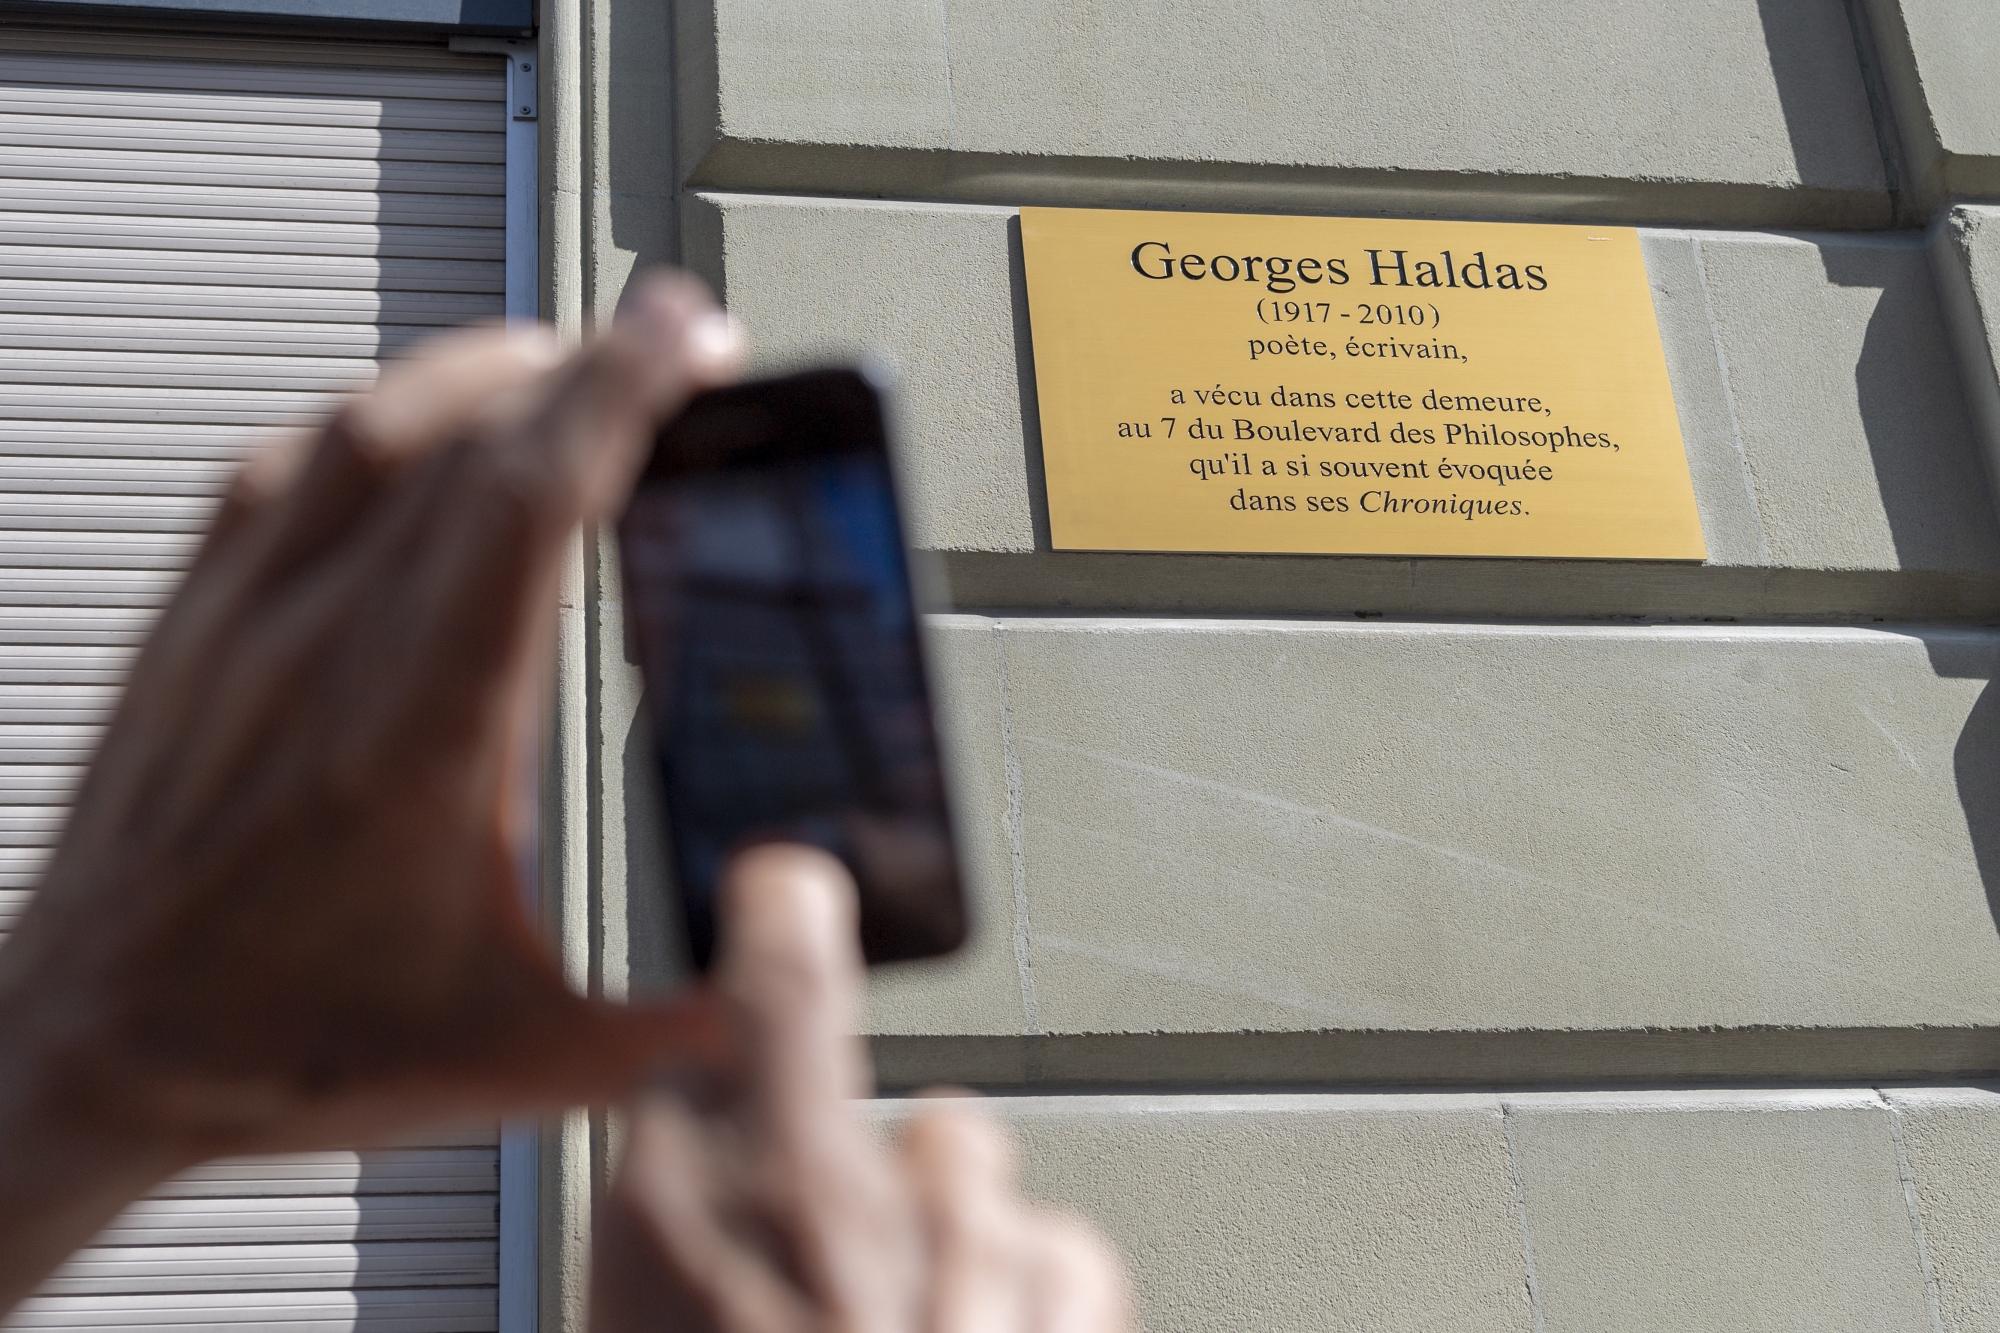 La plaque epigraphique en l'honneur de Georges Haldas, poète et écrivain genevois, est photographie lors de son dévoilement, ce jeudi 13 septembre 2018 à Genève.